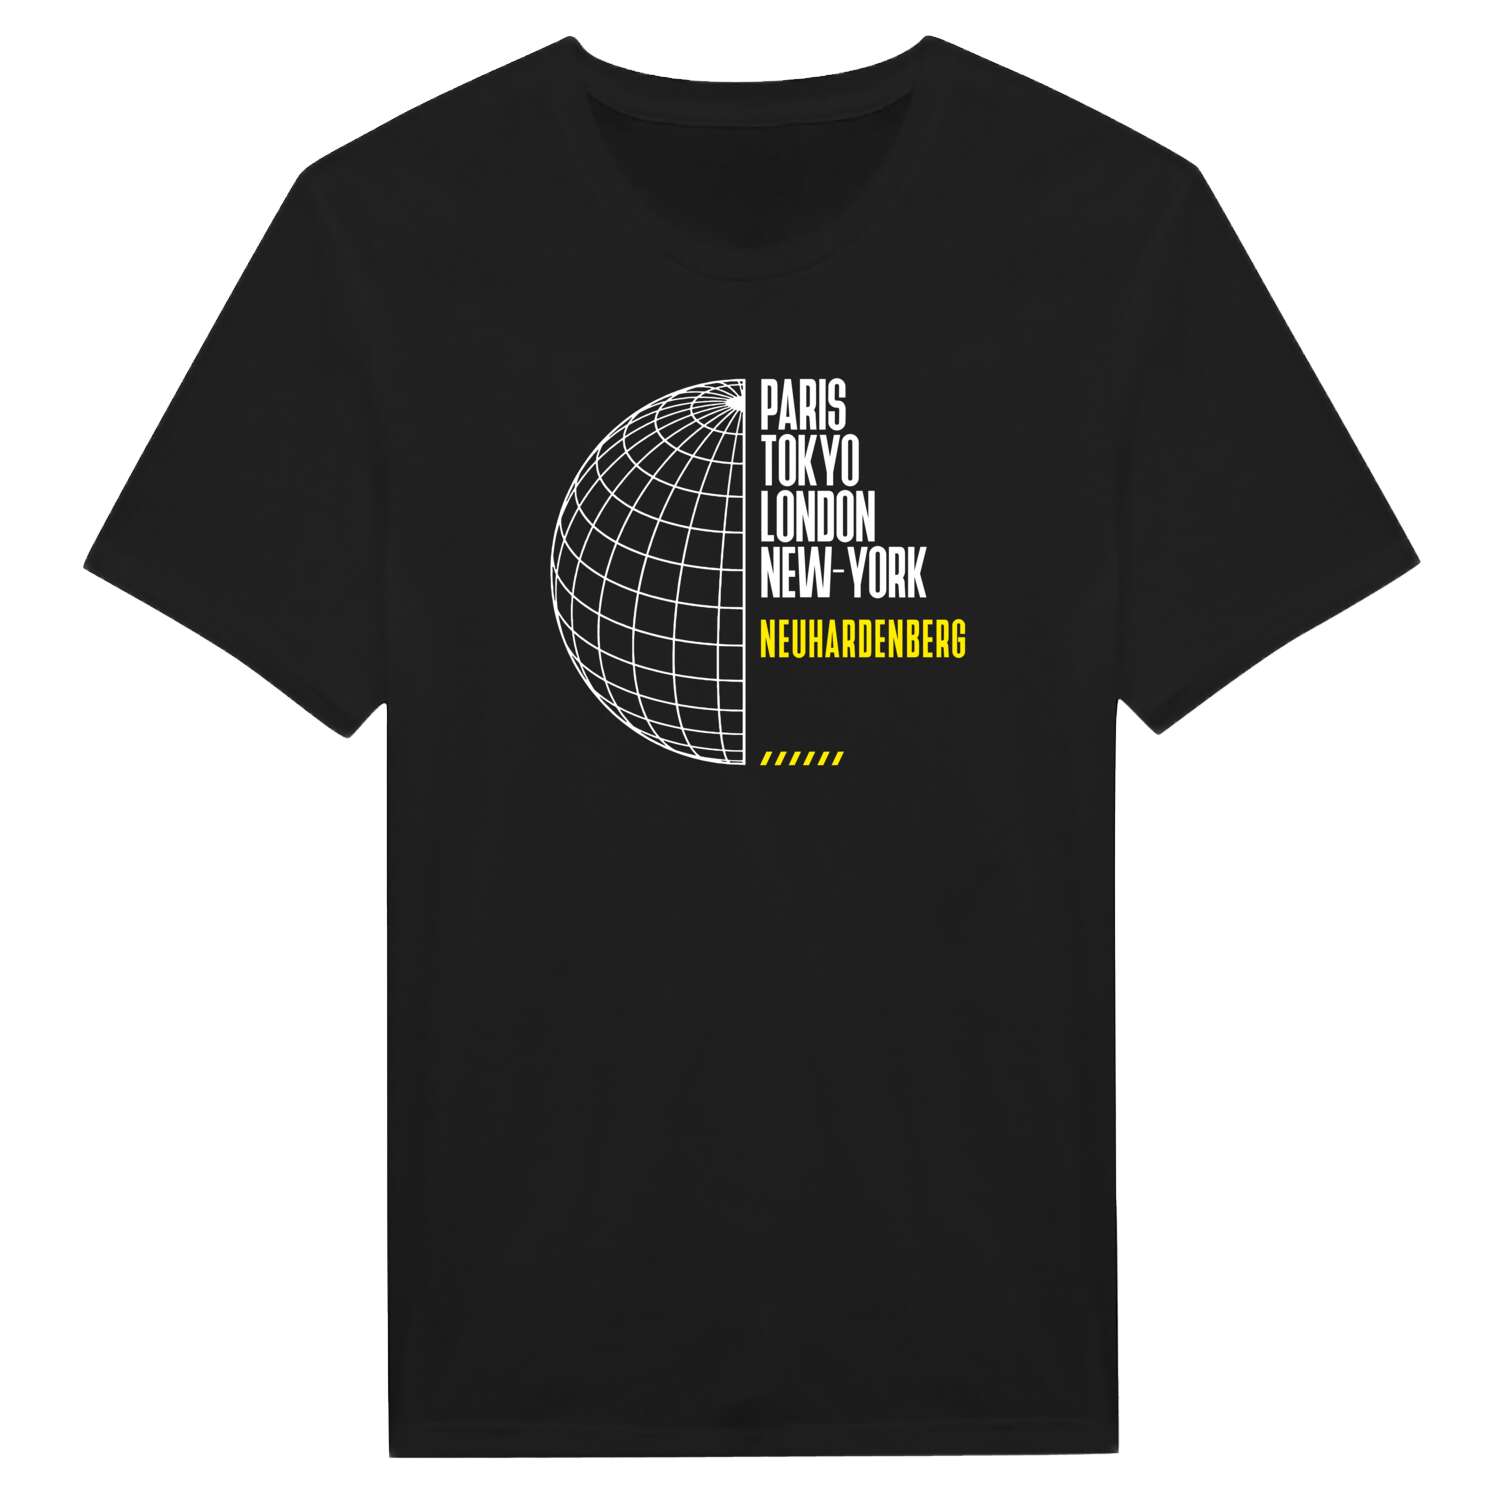 Neuhardenberg T-Shirt »Paris Tokyo London«